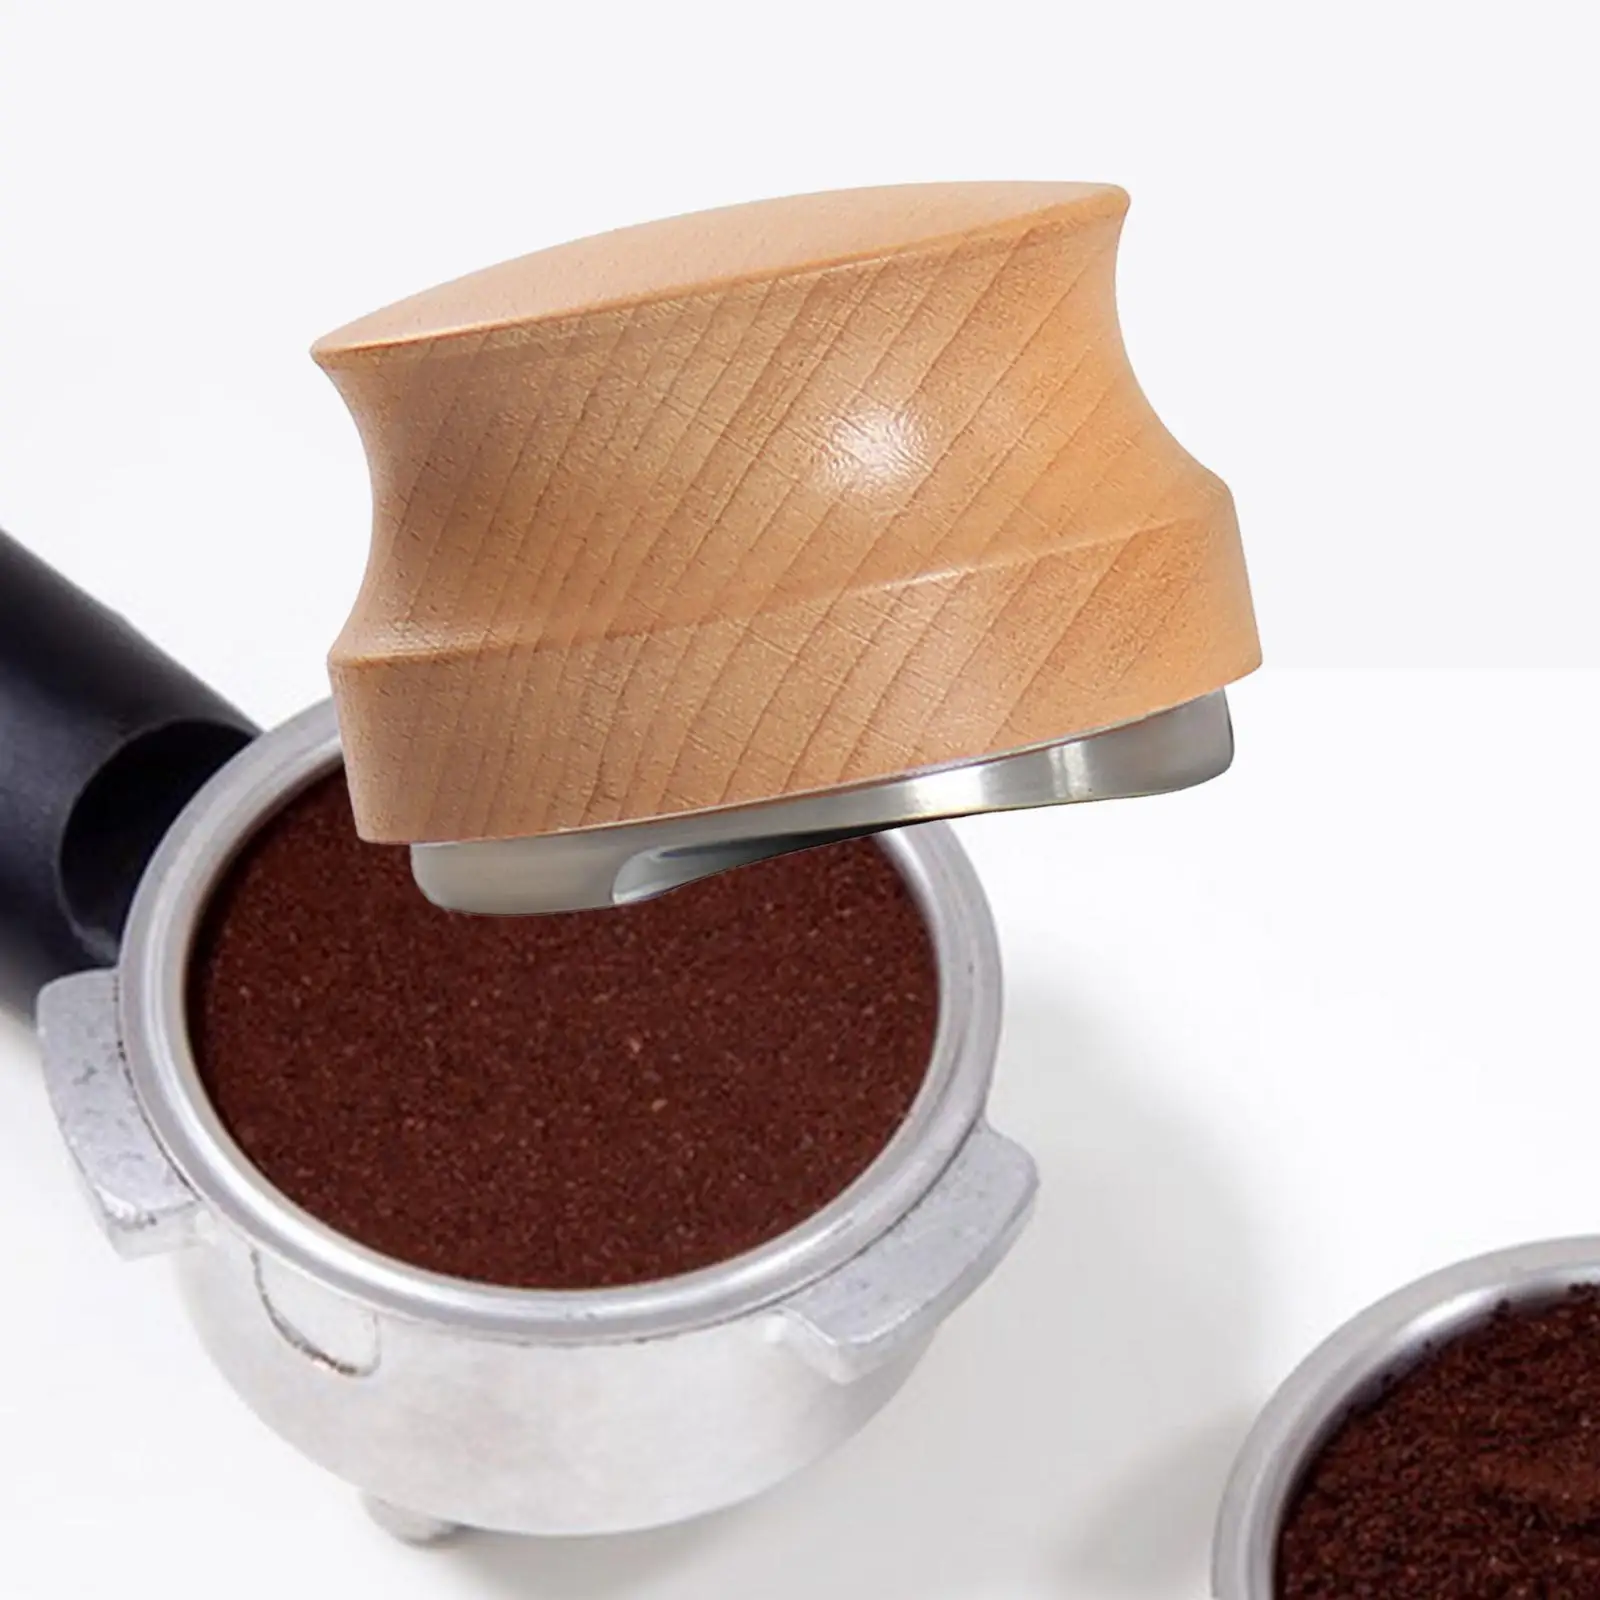 Espresso Distribution Tool Fits Adjustable Depth Hand Tamper for Portafilter